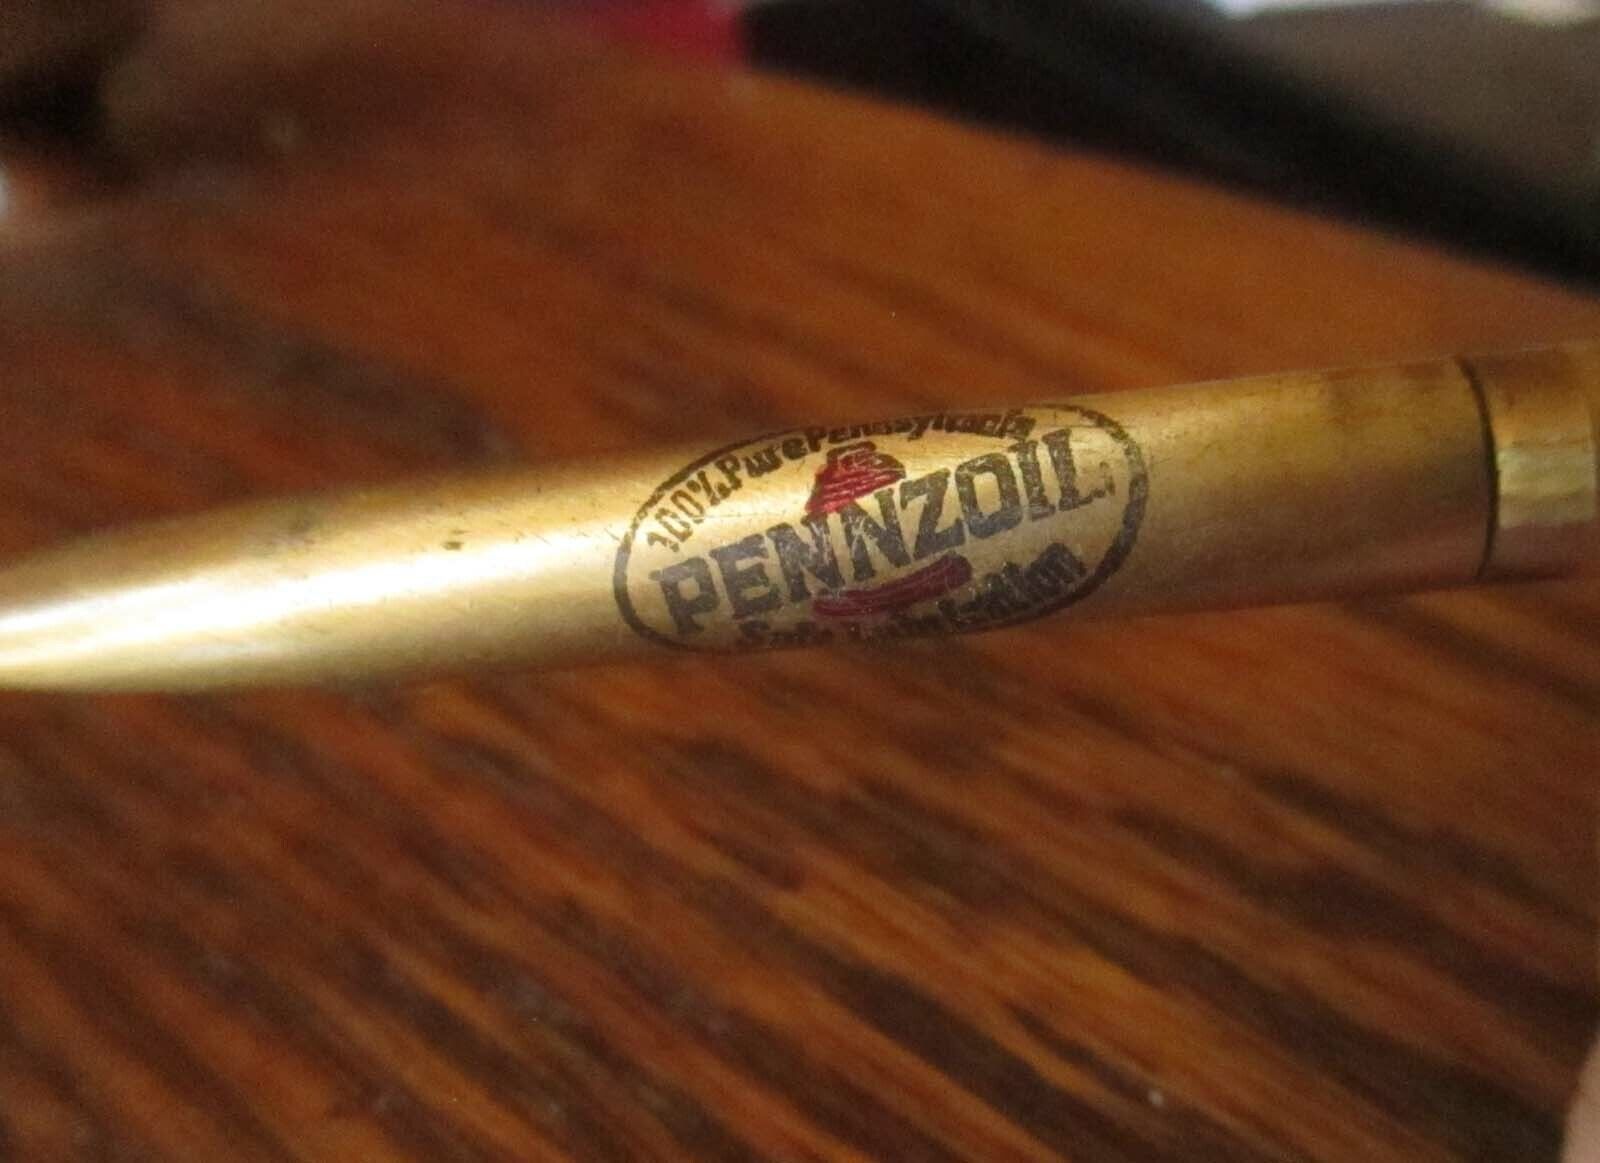 Rare Vintage Everlast Brushed mEtal Ballpoint Advertising Pennzoil denver co